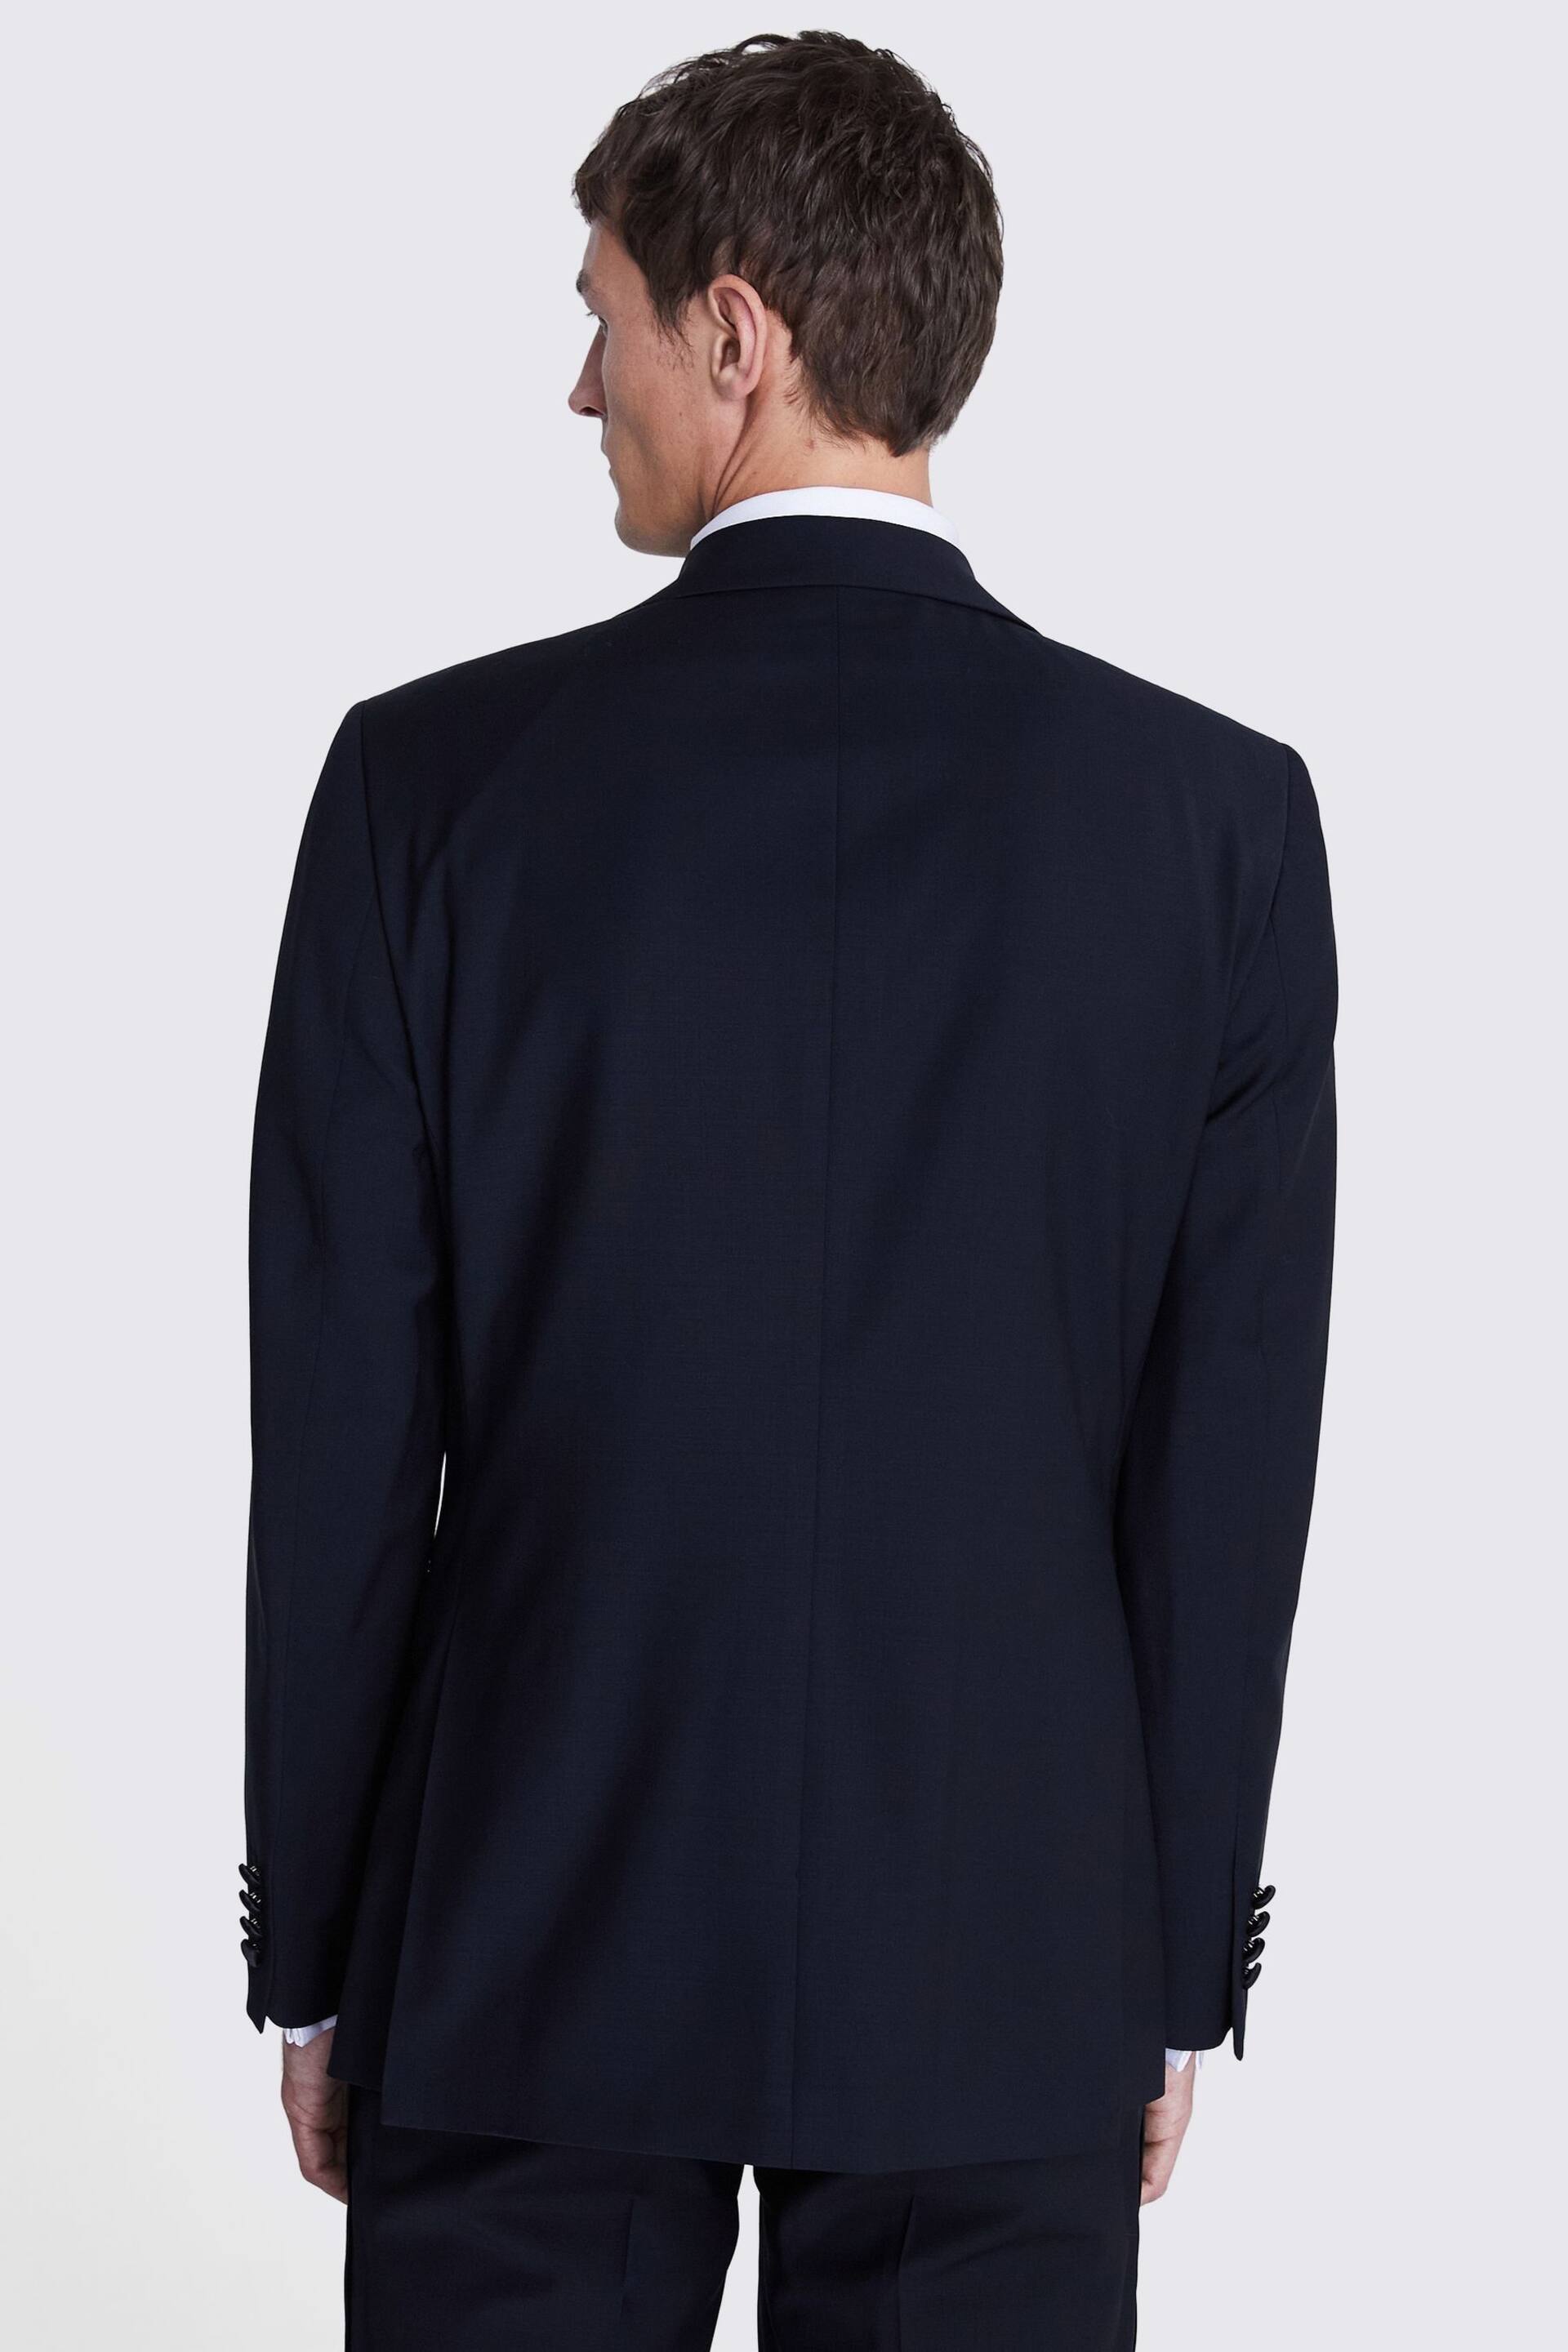 MOSS Regular Fit Black Notch Lapel Suit: Jacket - Image 3 of 4